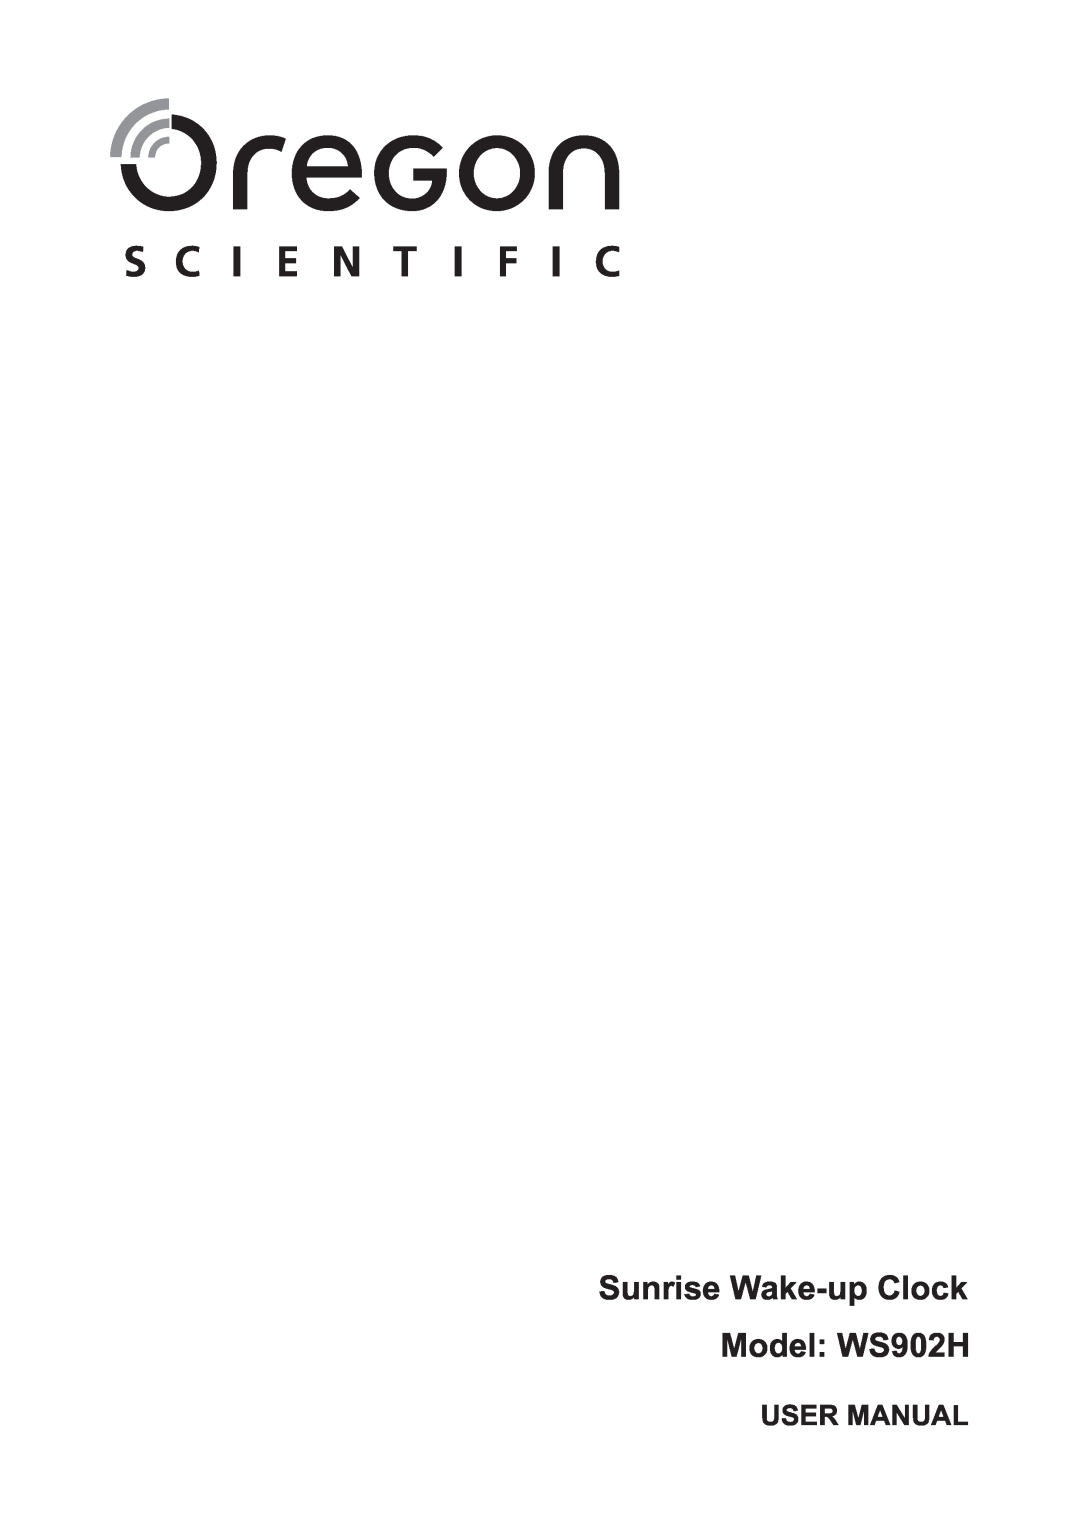 Oregon Scientific user manual Sunrise Wake-up Clock Model WS902H, User Manual 